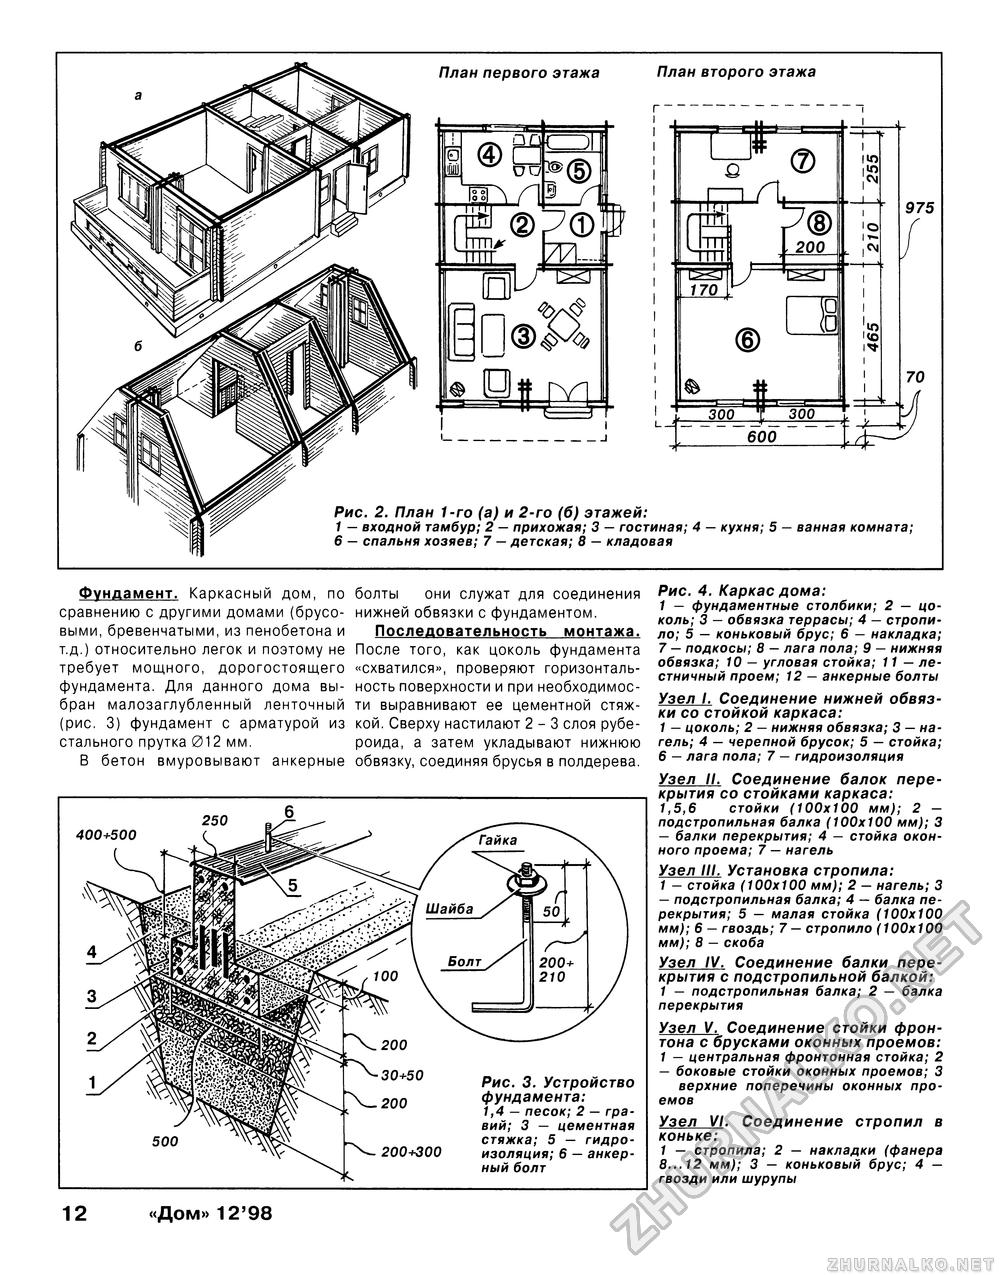 Дом 1998-12, страница 12